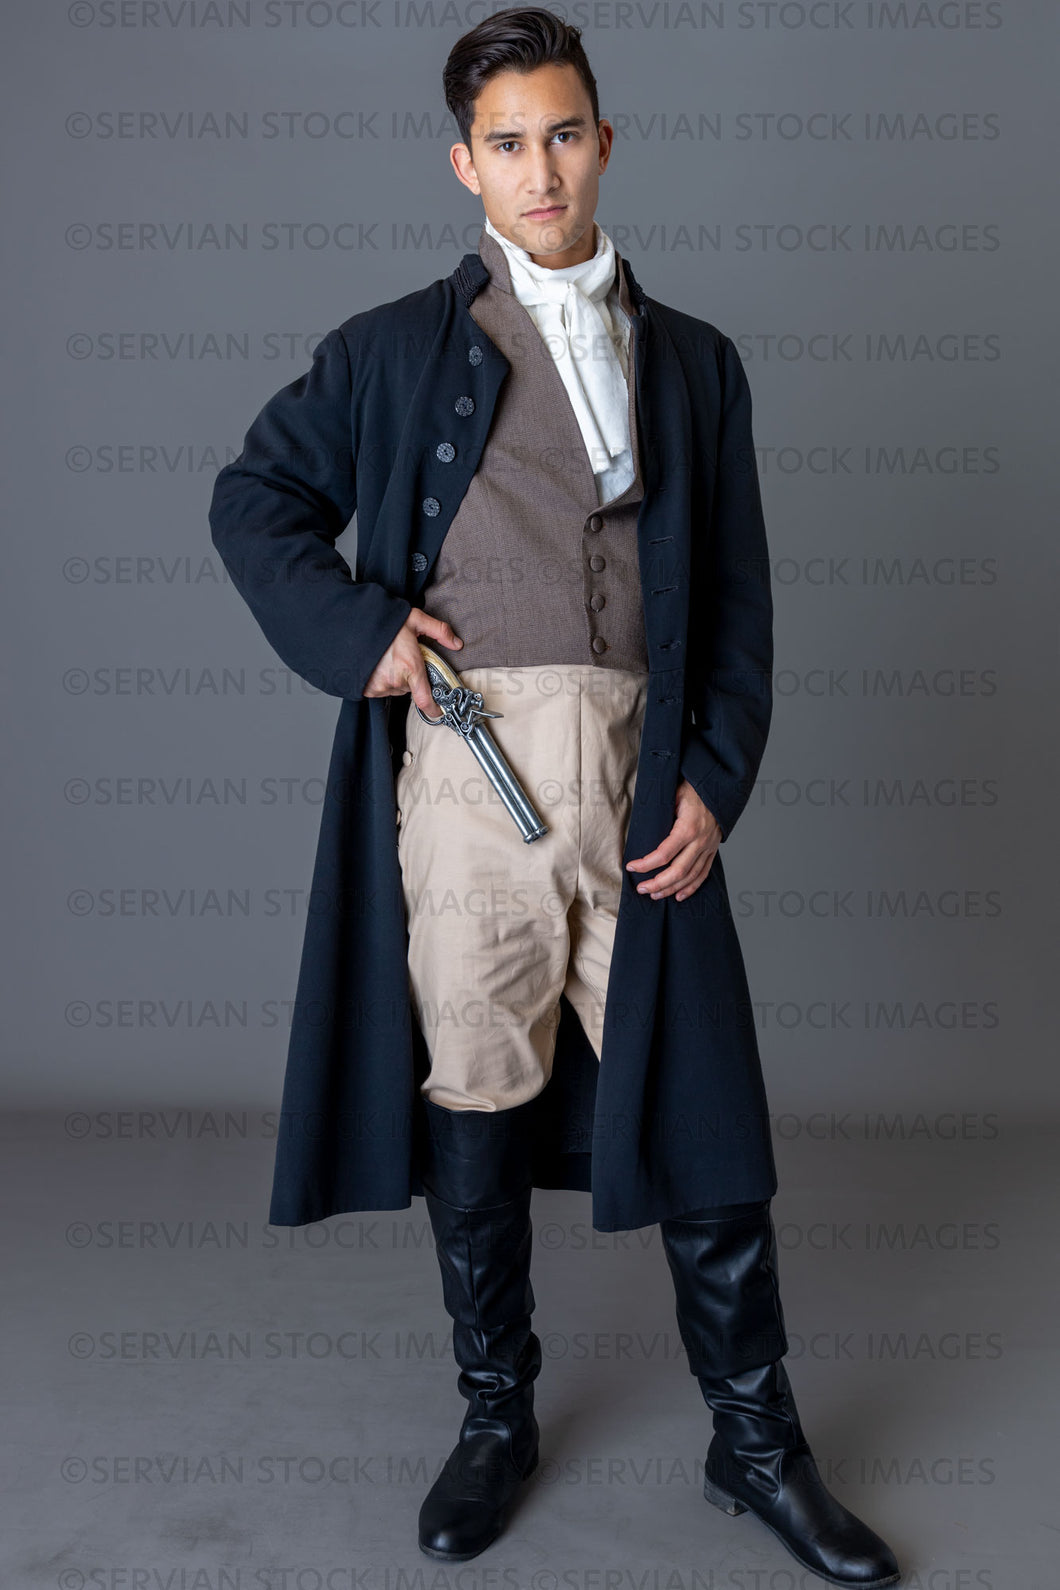 Regency gentleman holding a pistol against a grey backdrop (Lukas 5909)